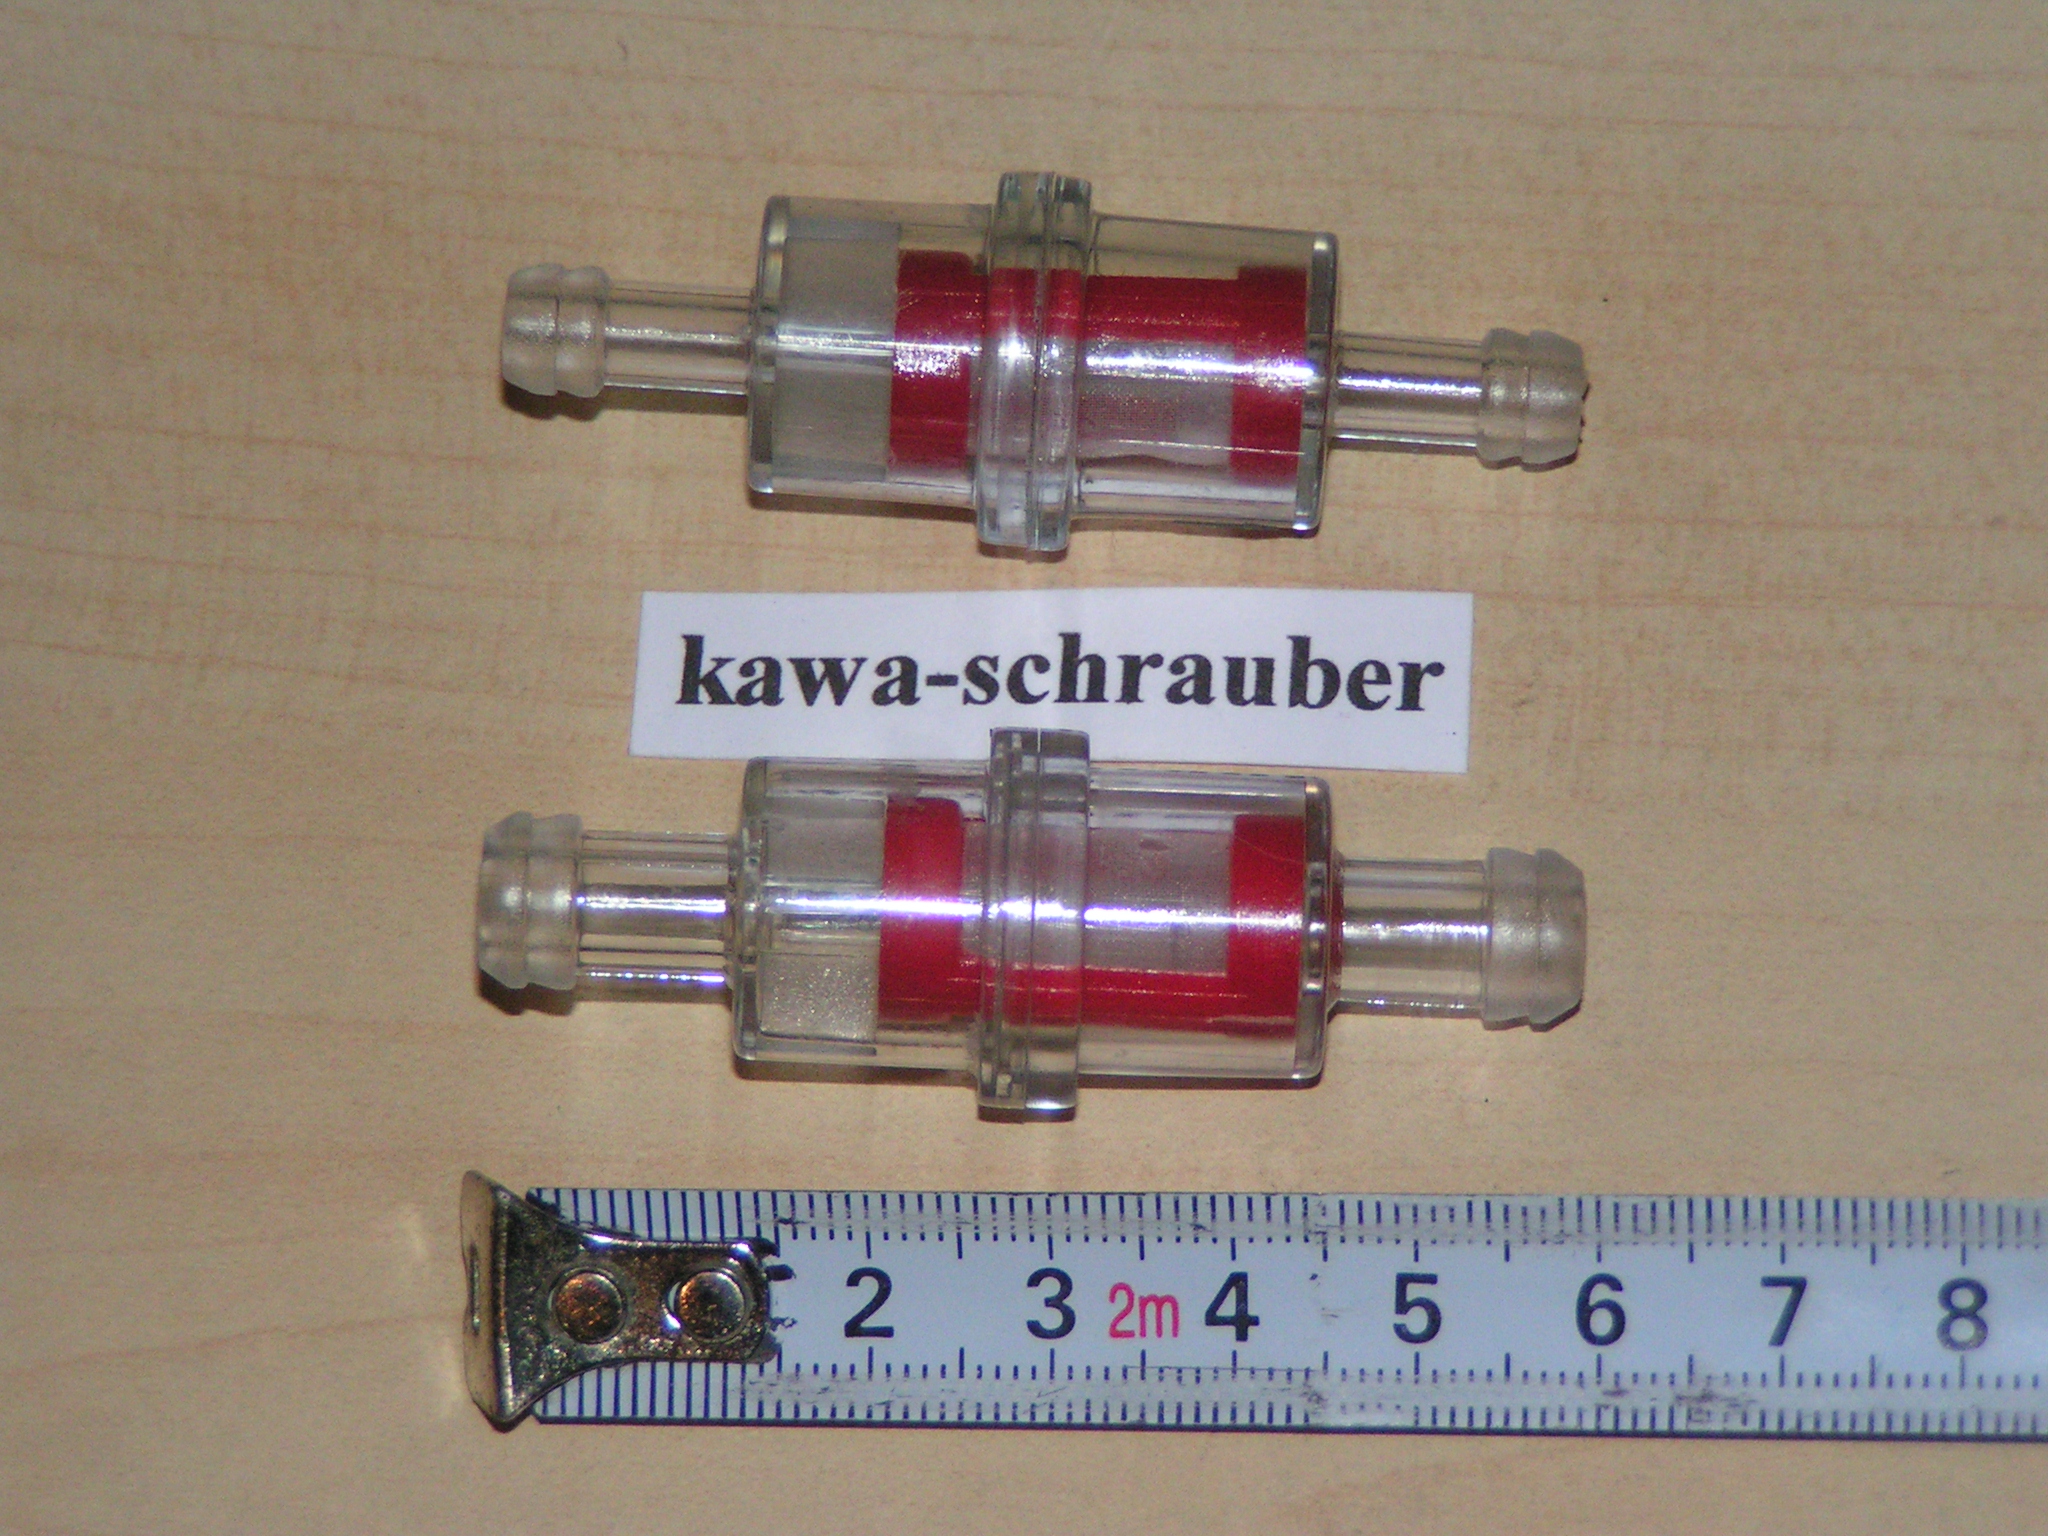 Benzinfilter für 6mm-Benzinschlauch, Alu-Gehäuse silber einseitig  aufschraubbar mit Sinter/Bronze Filter, Länge ca. 37mm ohne Anschluss